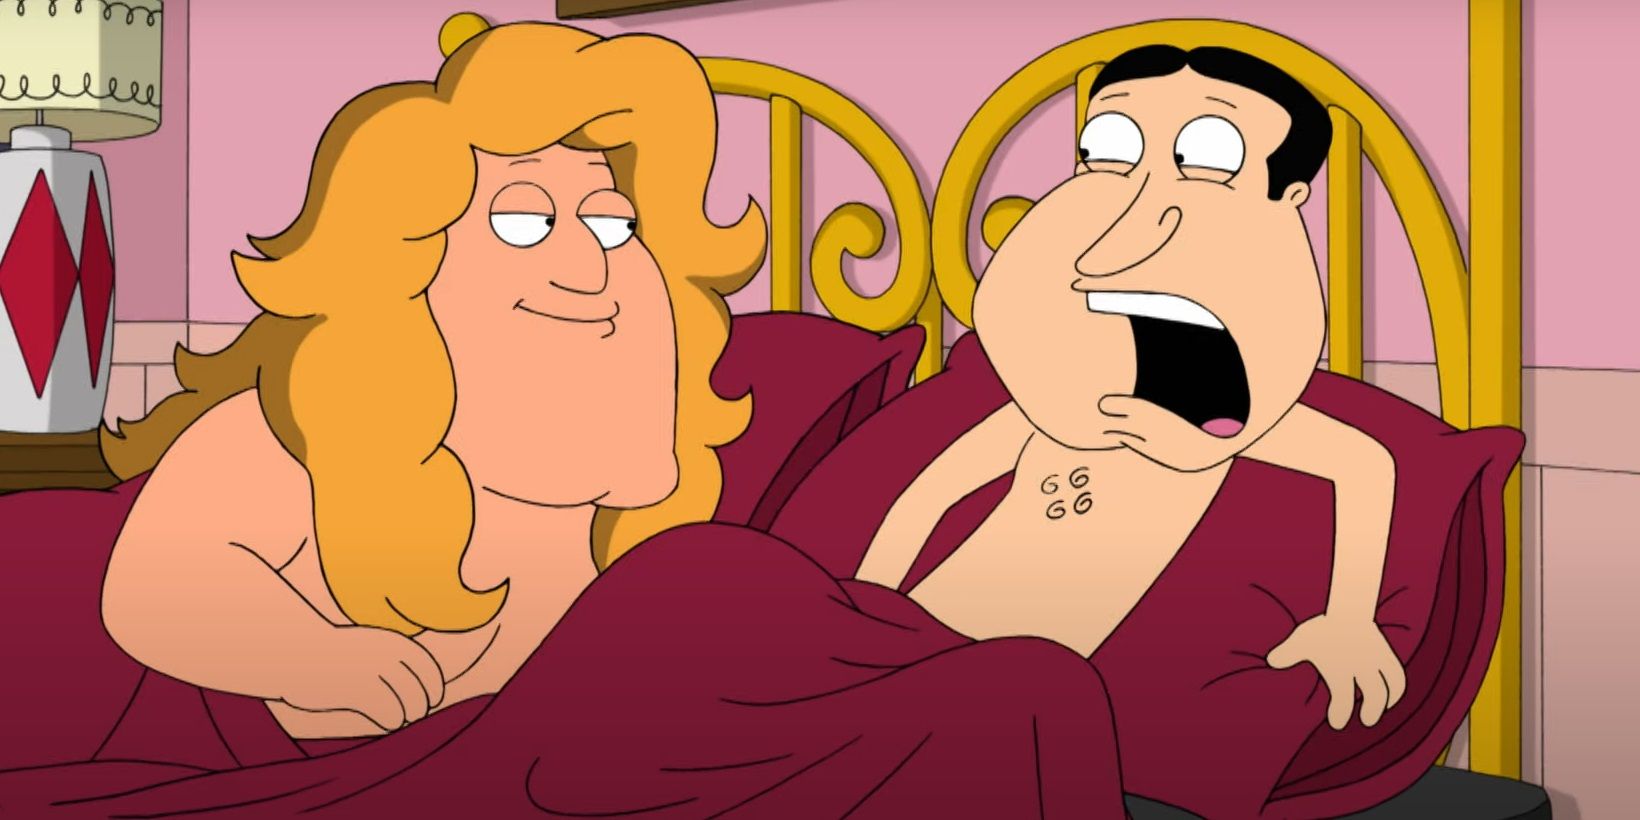 Joe Swanson and Glenn Quagmire in bed in Family Guy